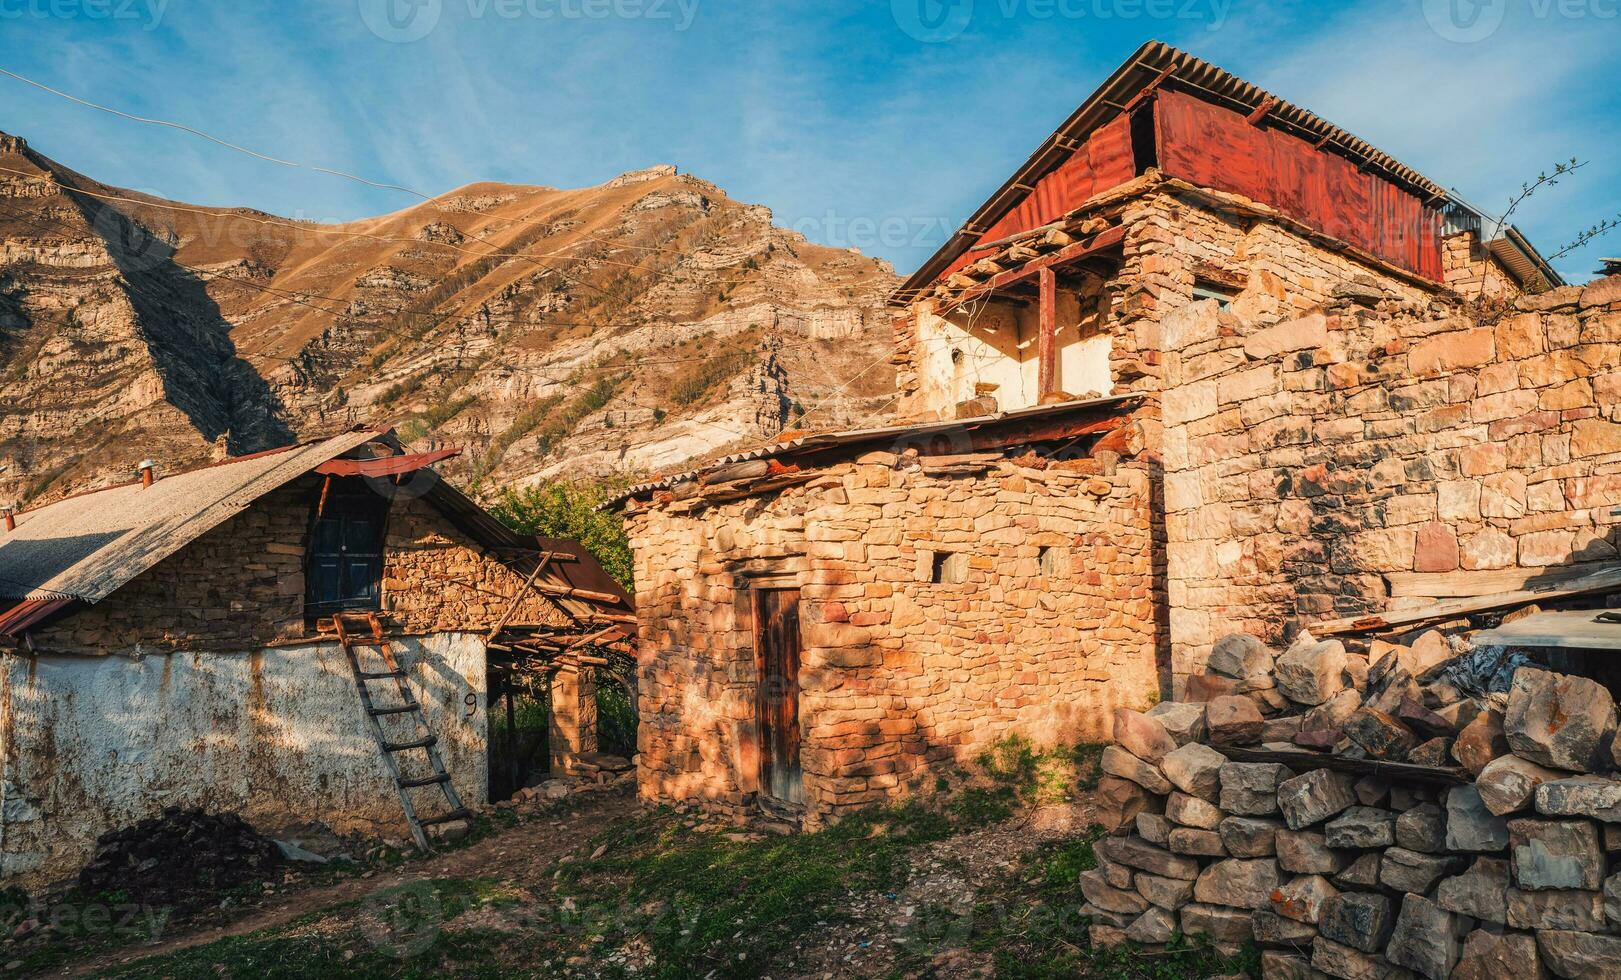 rural Roca casa en un pueblo en bien, daguestán foto